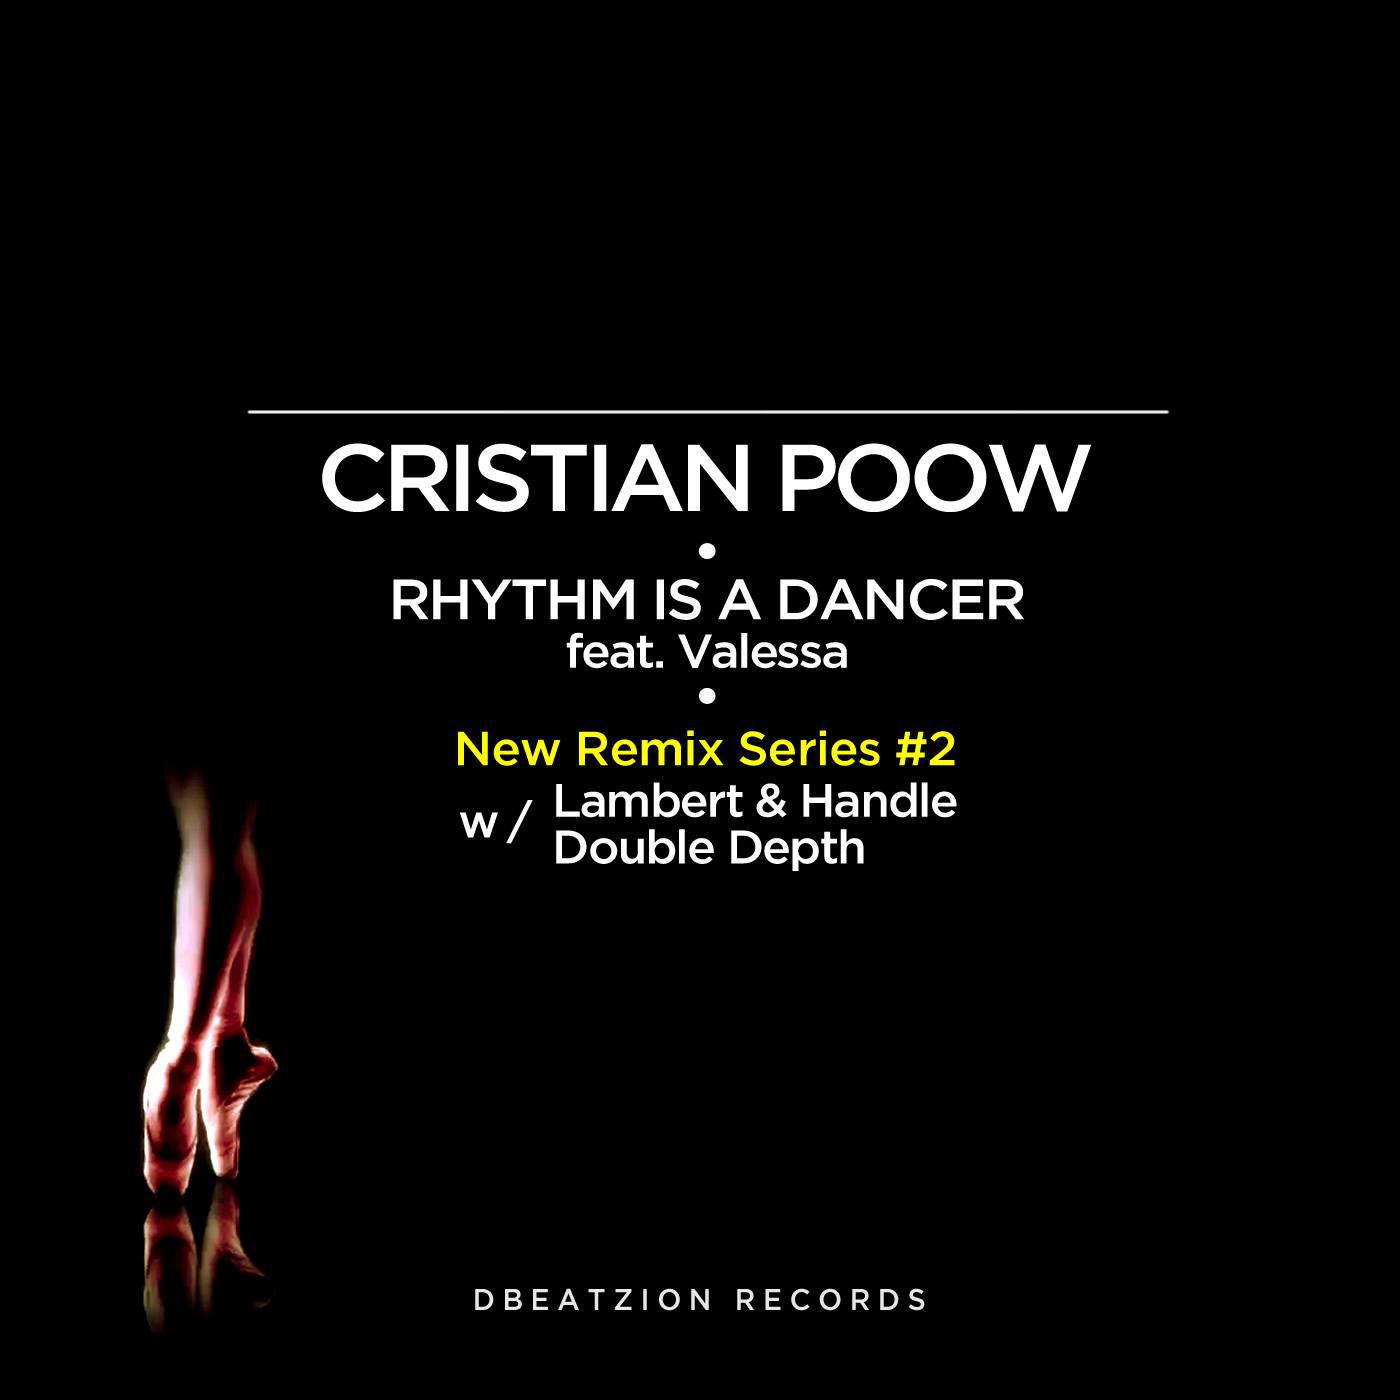 Rhythm is a dancer mp3. Cristian Poow Rhythm. Cristian Poow - Rhythm is a Dancer (Double depth Remix). Rhythm is a Dancer. Cristian Poow – Rhythm is a Dancer (feat. Valessa) (Double depth Remix) (by Snap!).